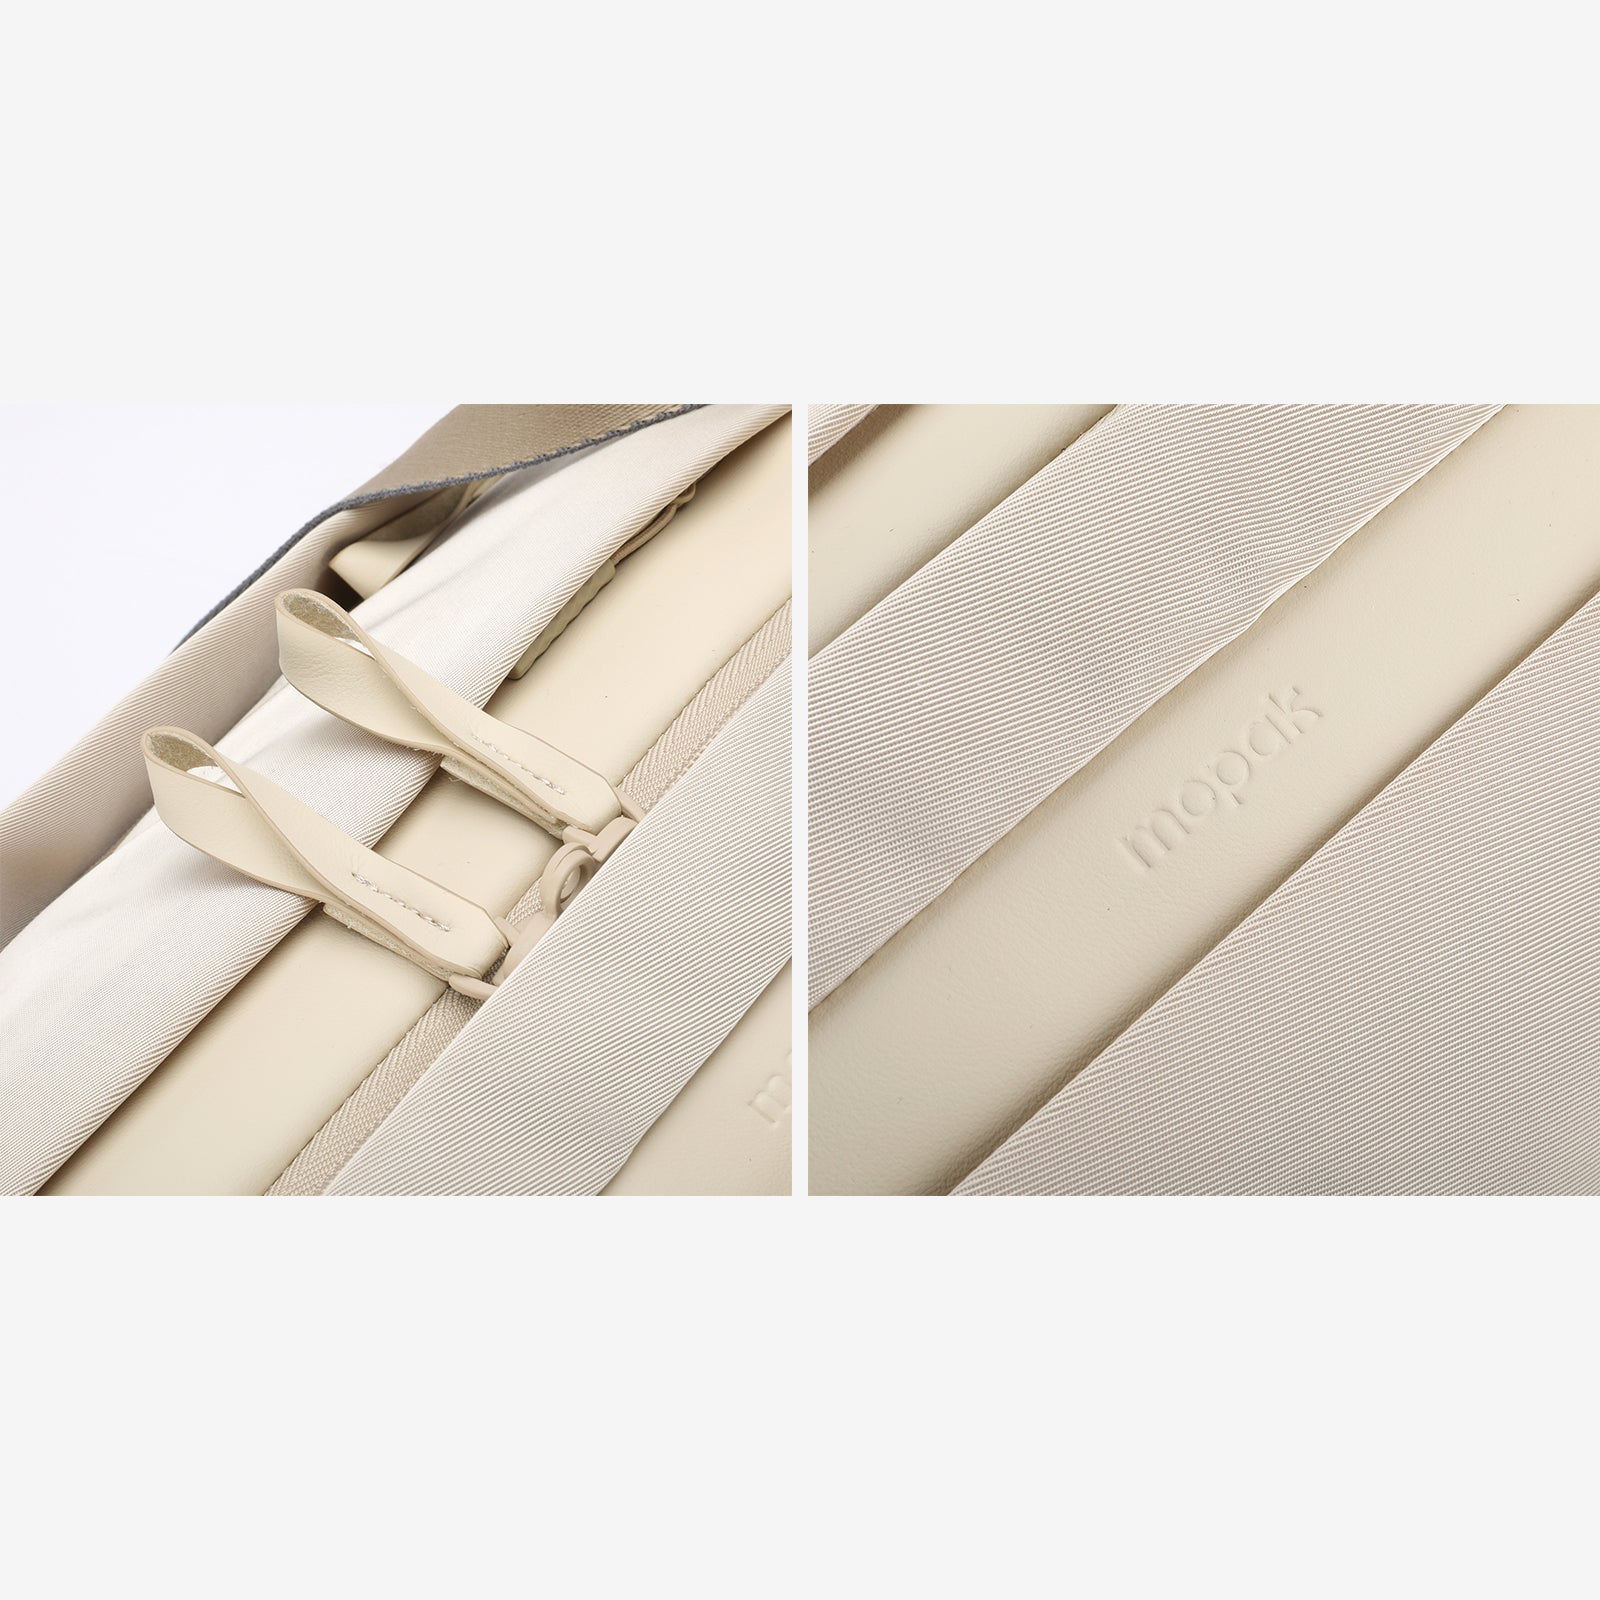 Mopak Weekender Duffel Bag waterproof high quality zippers #color_natural